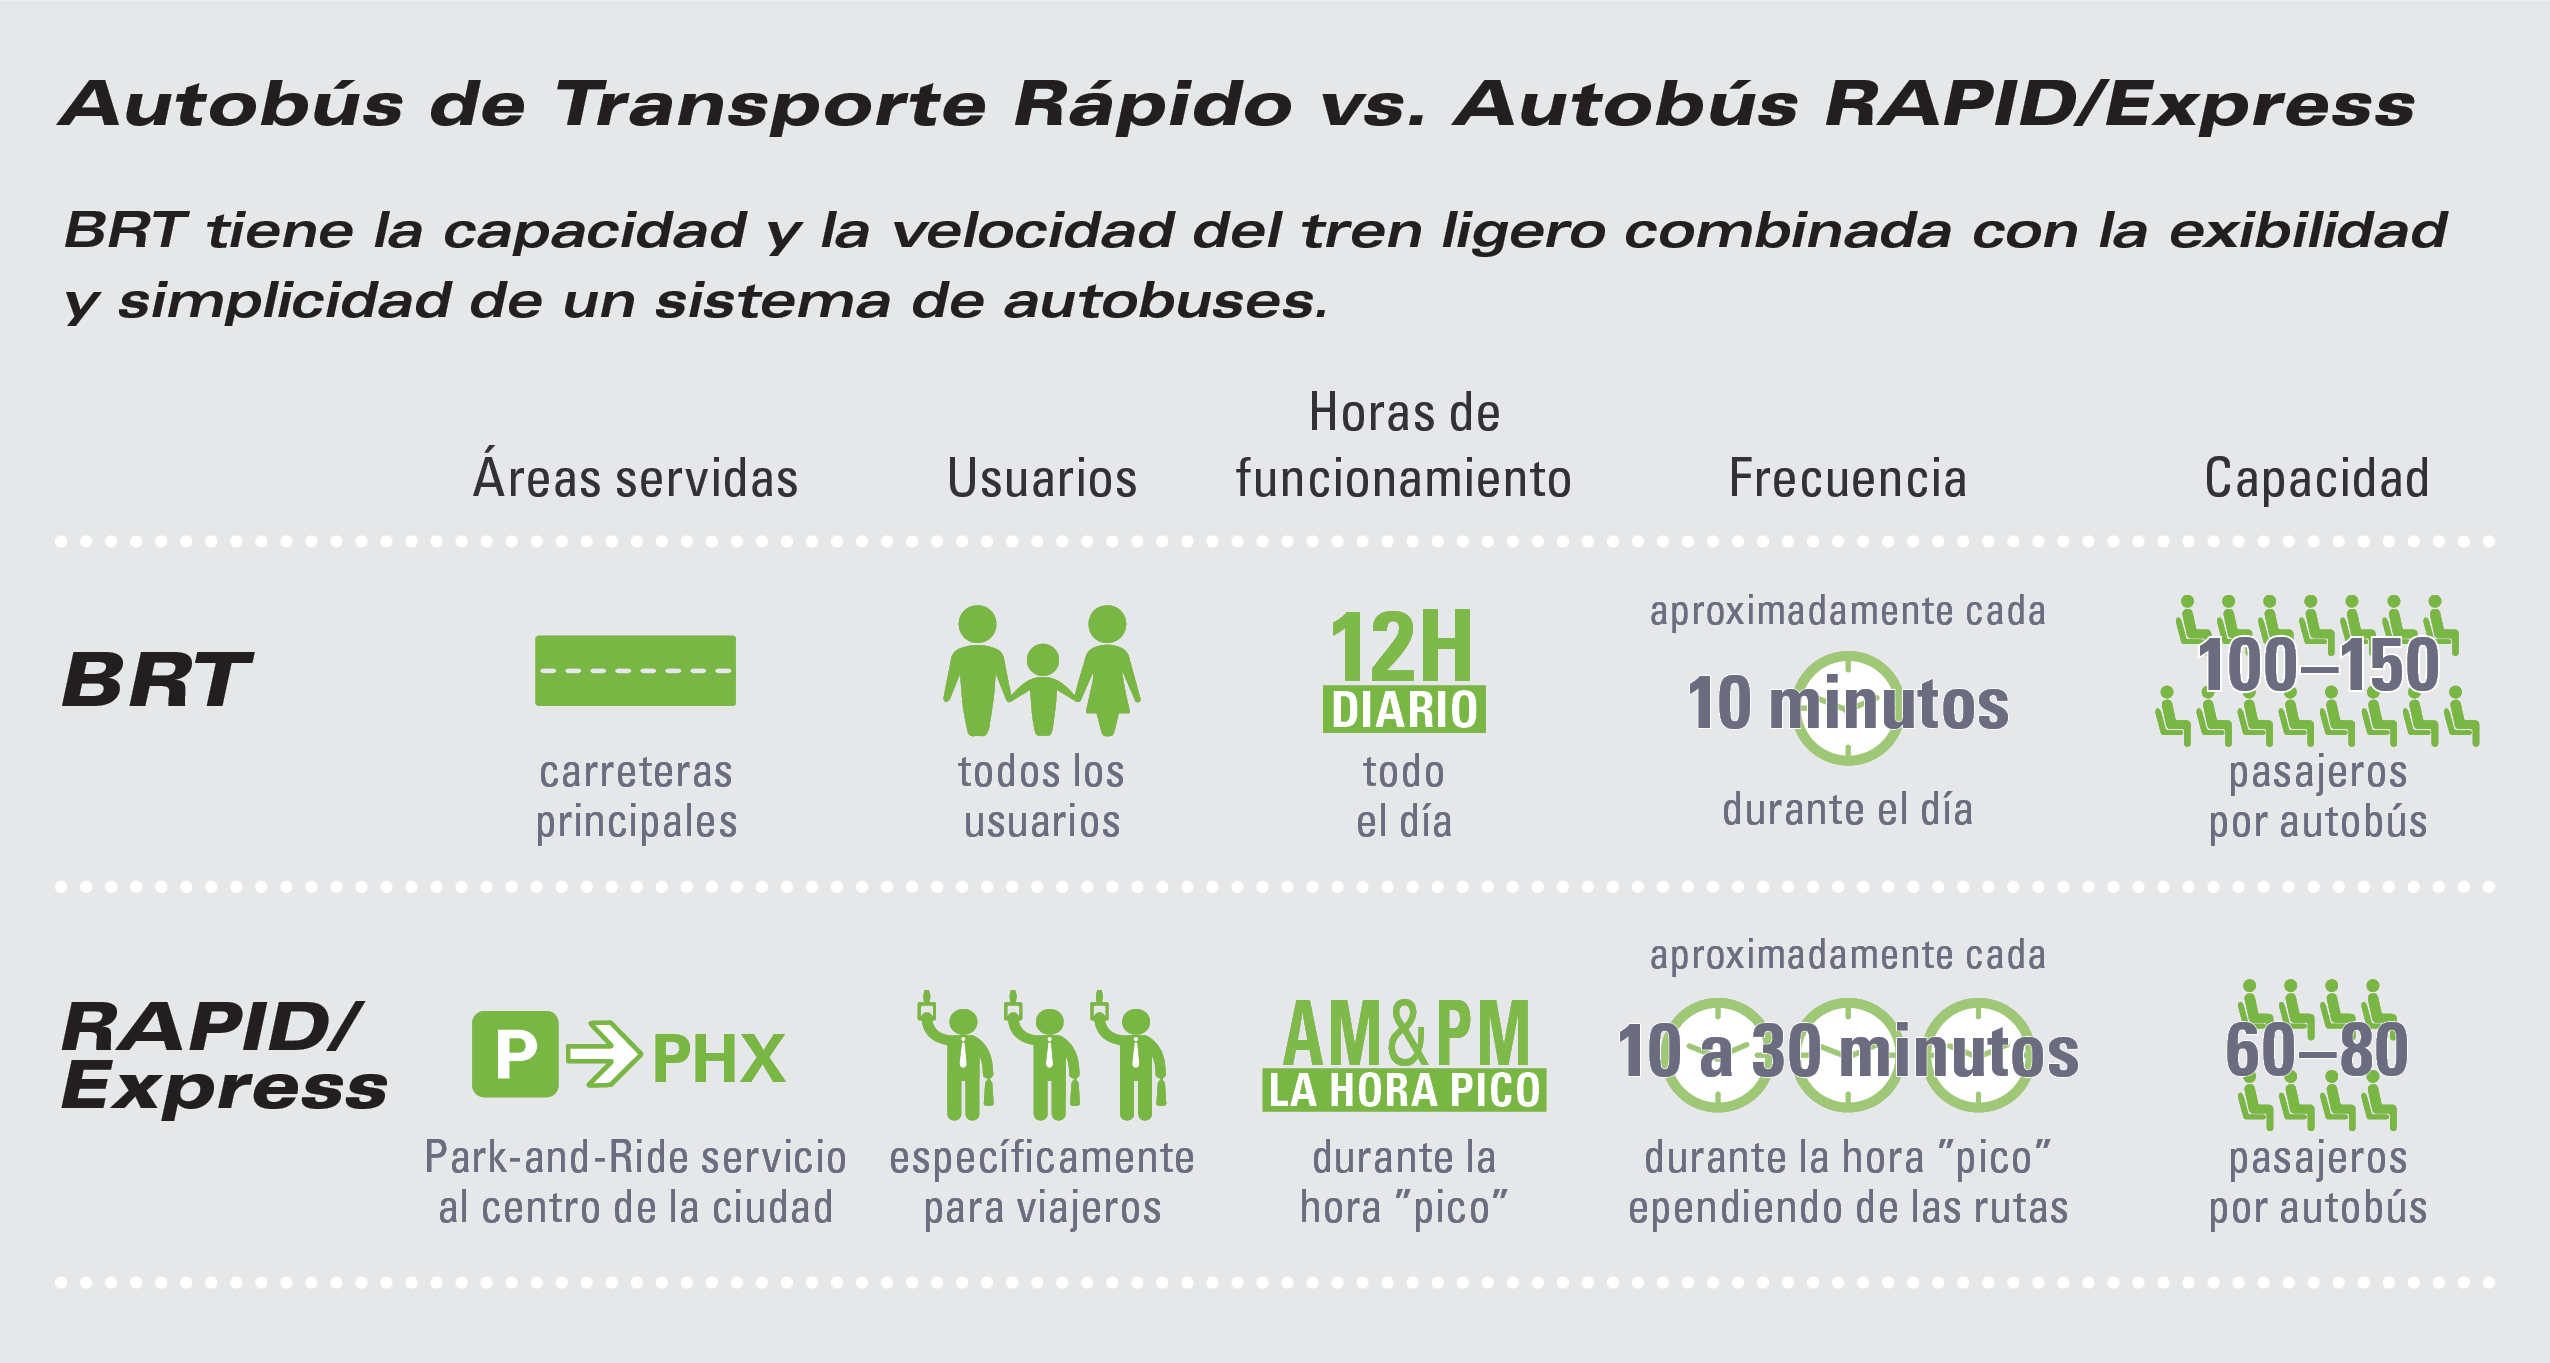 BRT versus RAPID / Express. BRT toma la capacidad y la velocidad del tren ligero y lo combina con la flexibilidad y la simplicidad de un sistema de bus. BRT: áreas servidas, carreteras principales; usuarios, todos los usuarios; horario de atención, todo el día; frecuencia, aproximadamente cada 10 minutos durante el día; capacidad, 100 a 150 pasajeros por autobús. Autobús RAPID / Express: áreas servidas, servicio de estacionamiento y transporte al centro; usuarios, específicamente para viajeros; horario de atención, durante las horas pico a.m. y p.m. 'hora pico; frecuencia, aproximadamente cada 10 a 30 minutos durante la hora pico 'pico' dependiendo de las rutas; capacidad, 60 a 80 pasajeros por autobús